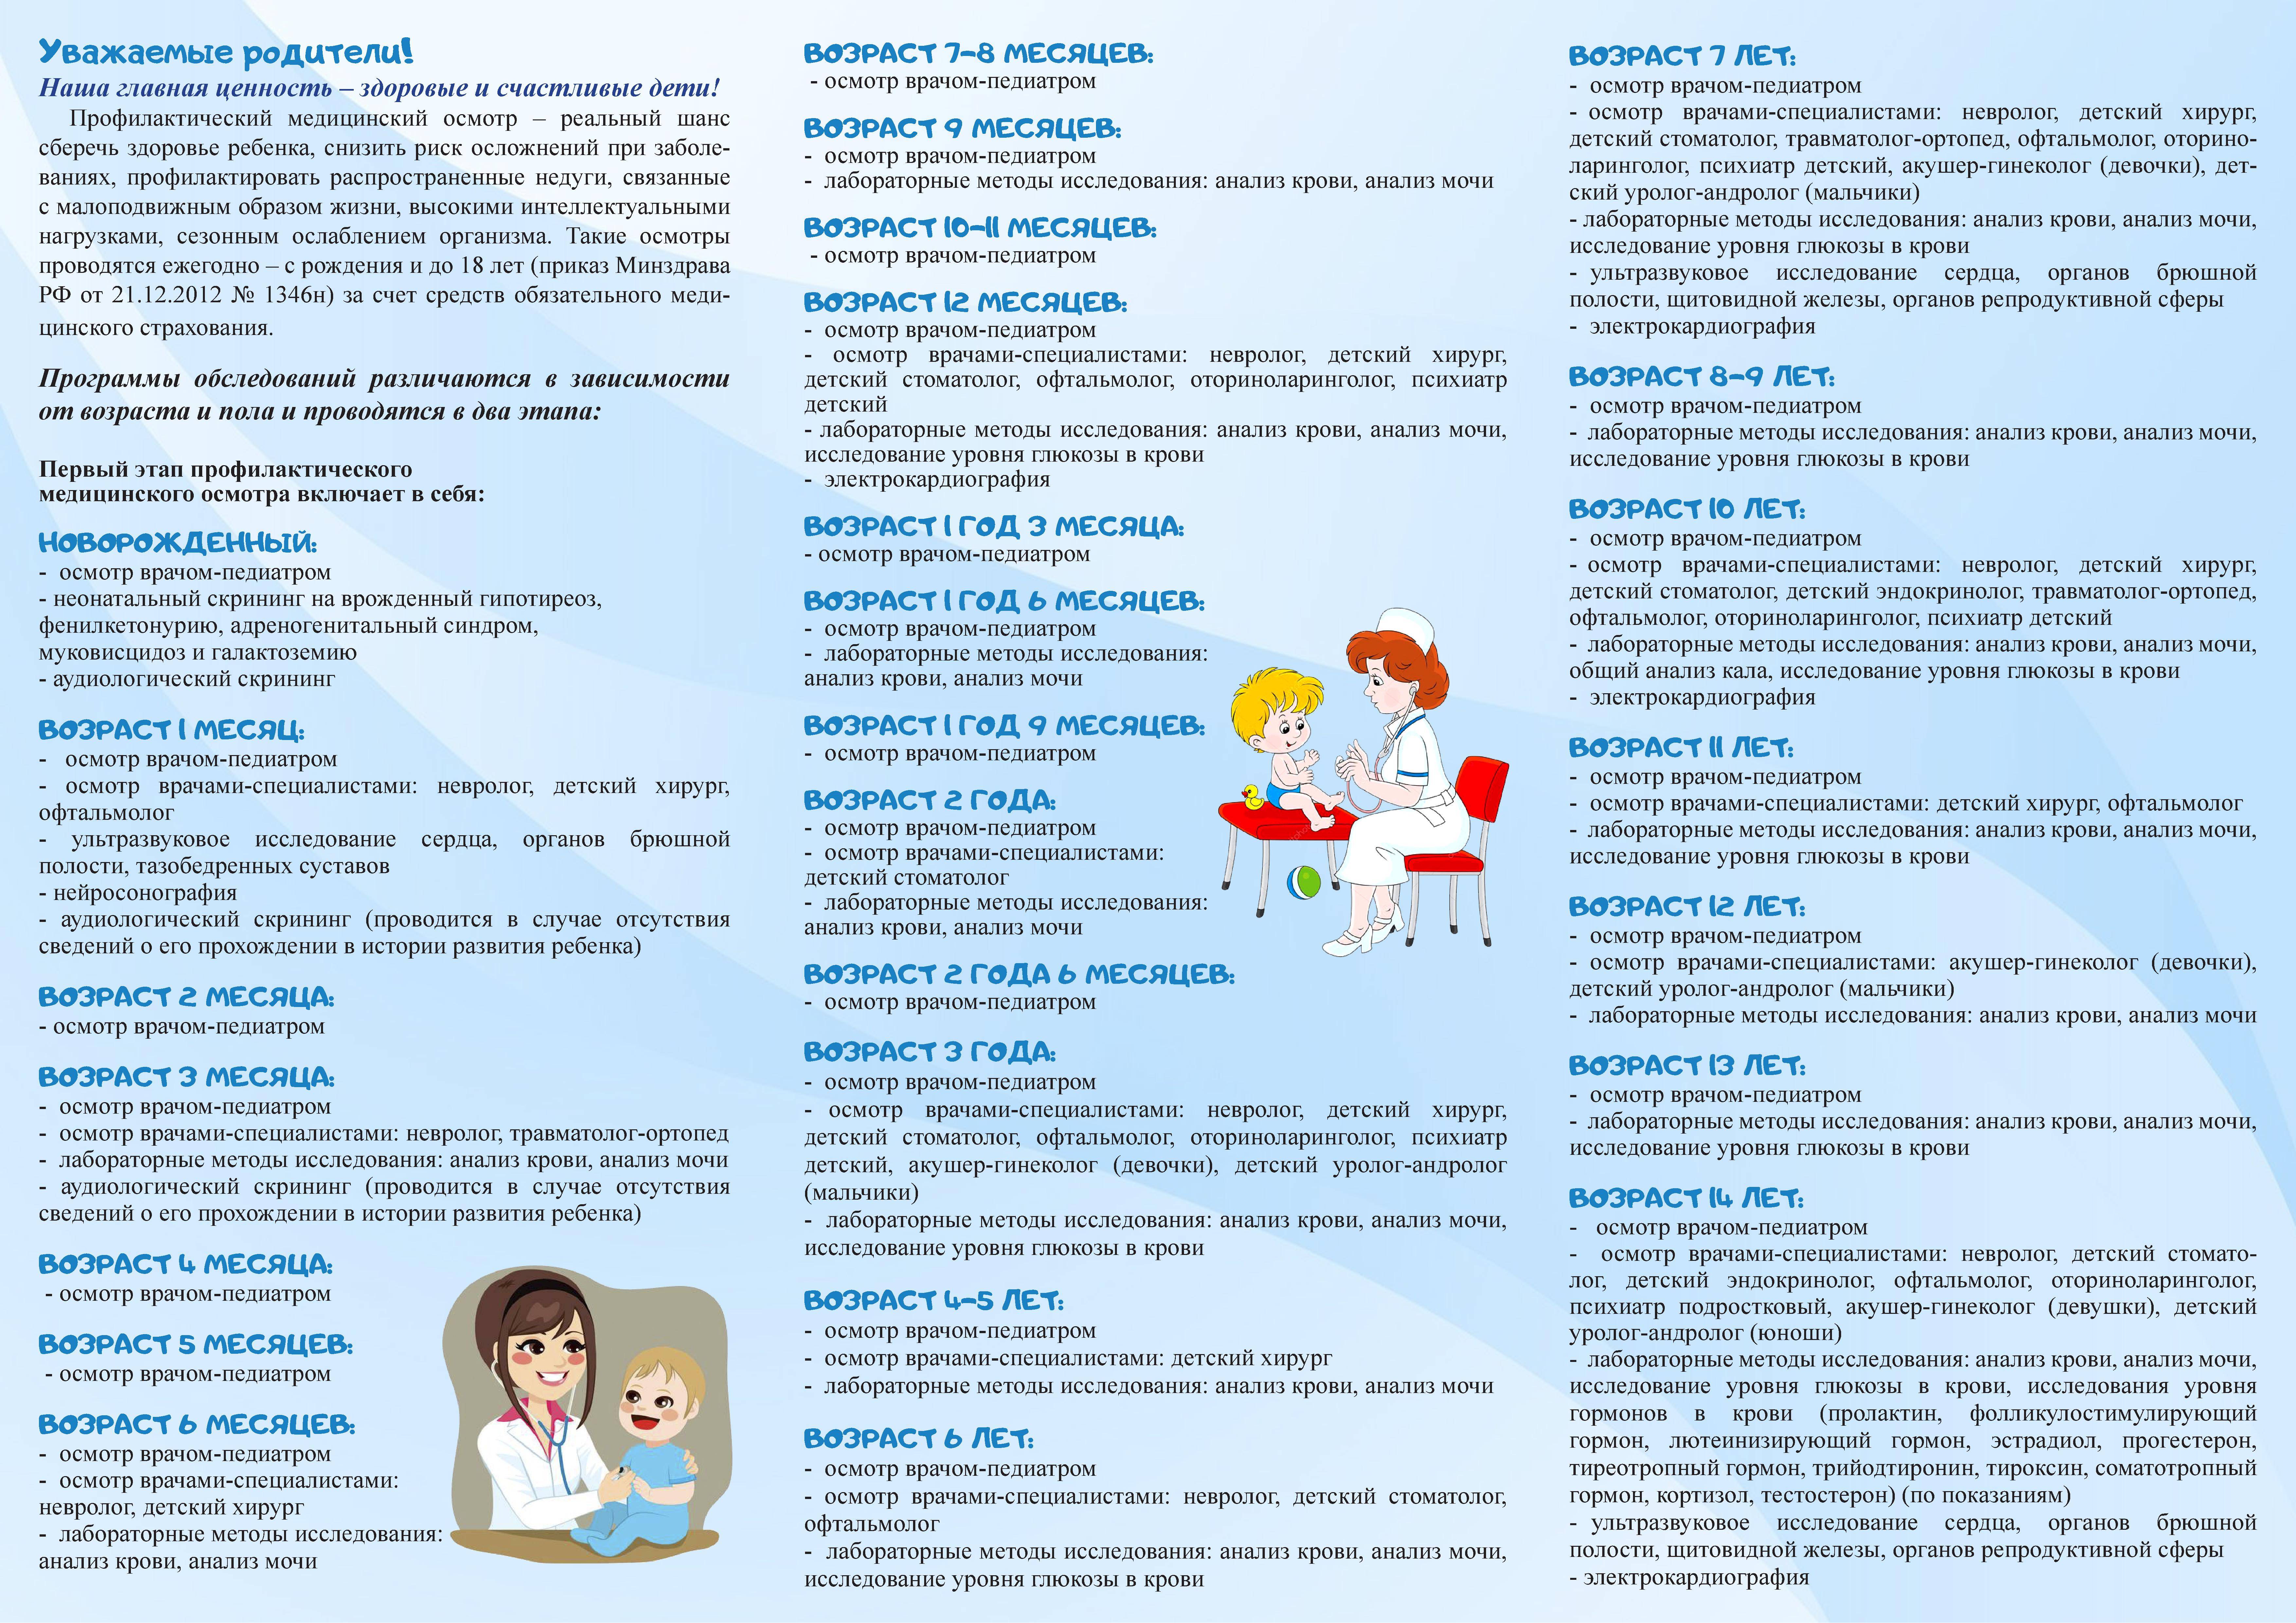 Детская неврология: симптомы неврологических заболеваний и рекомендации невролога